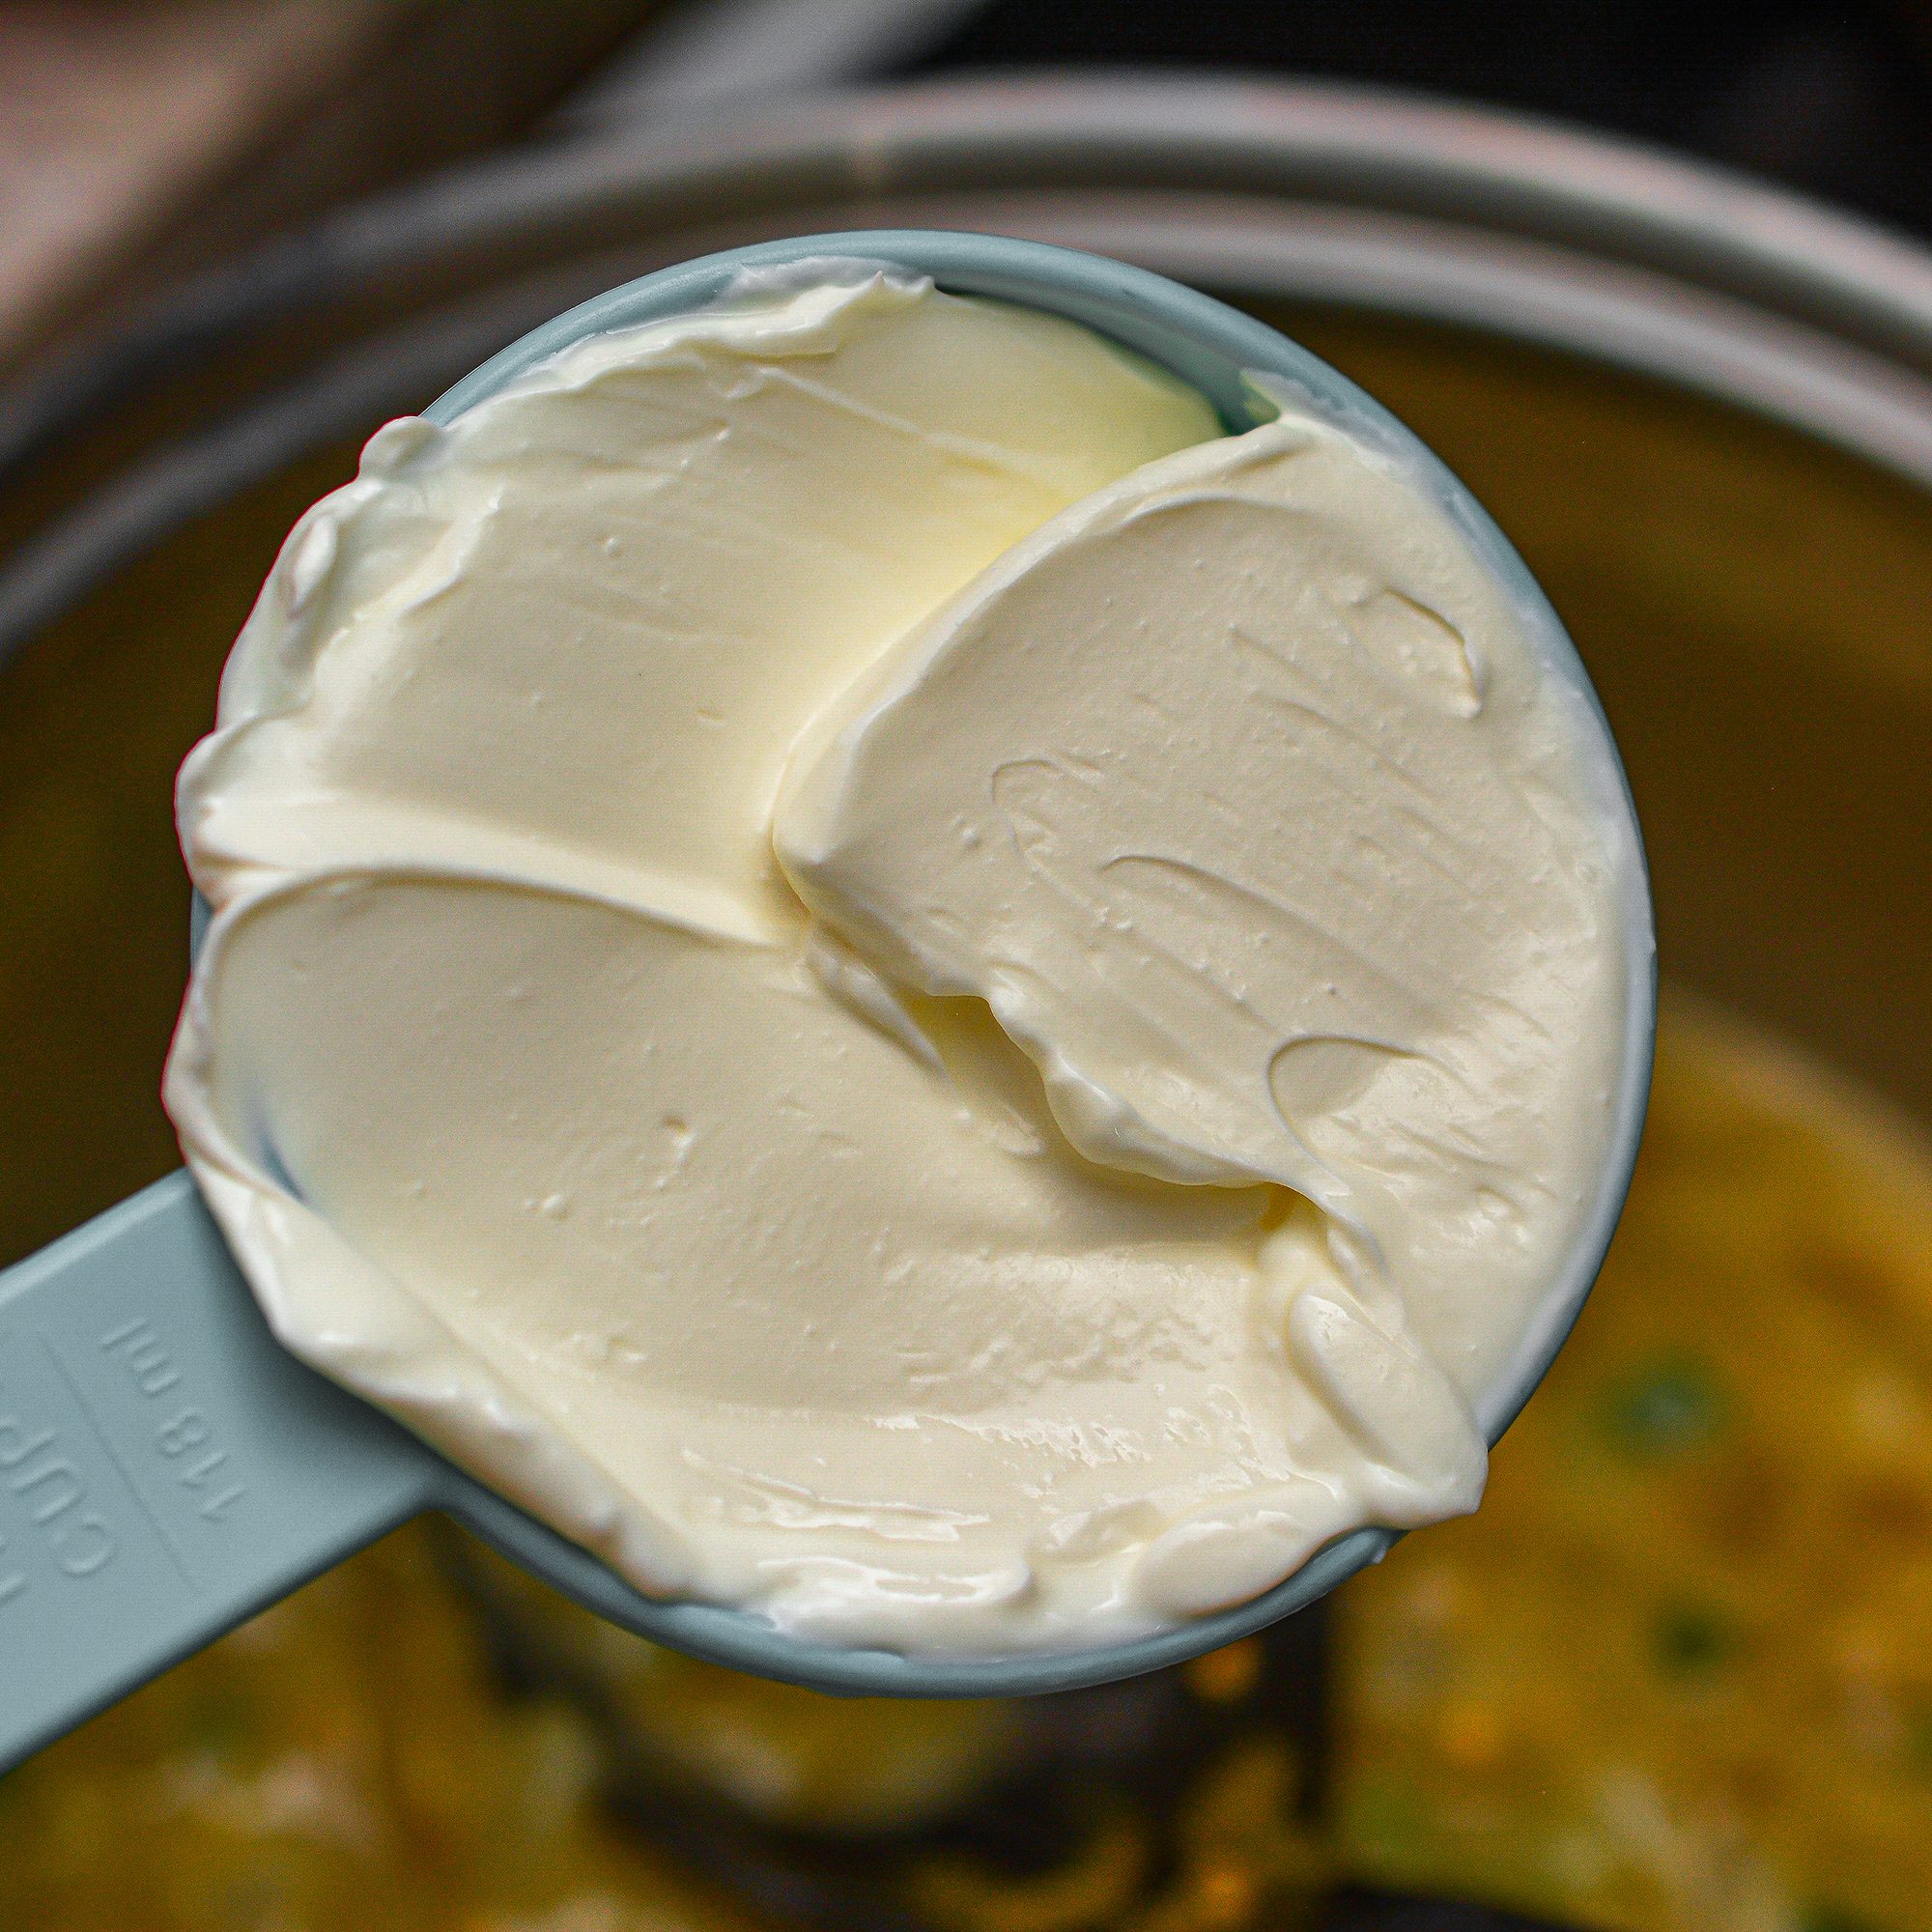 Stir in the sour cream.